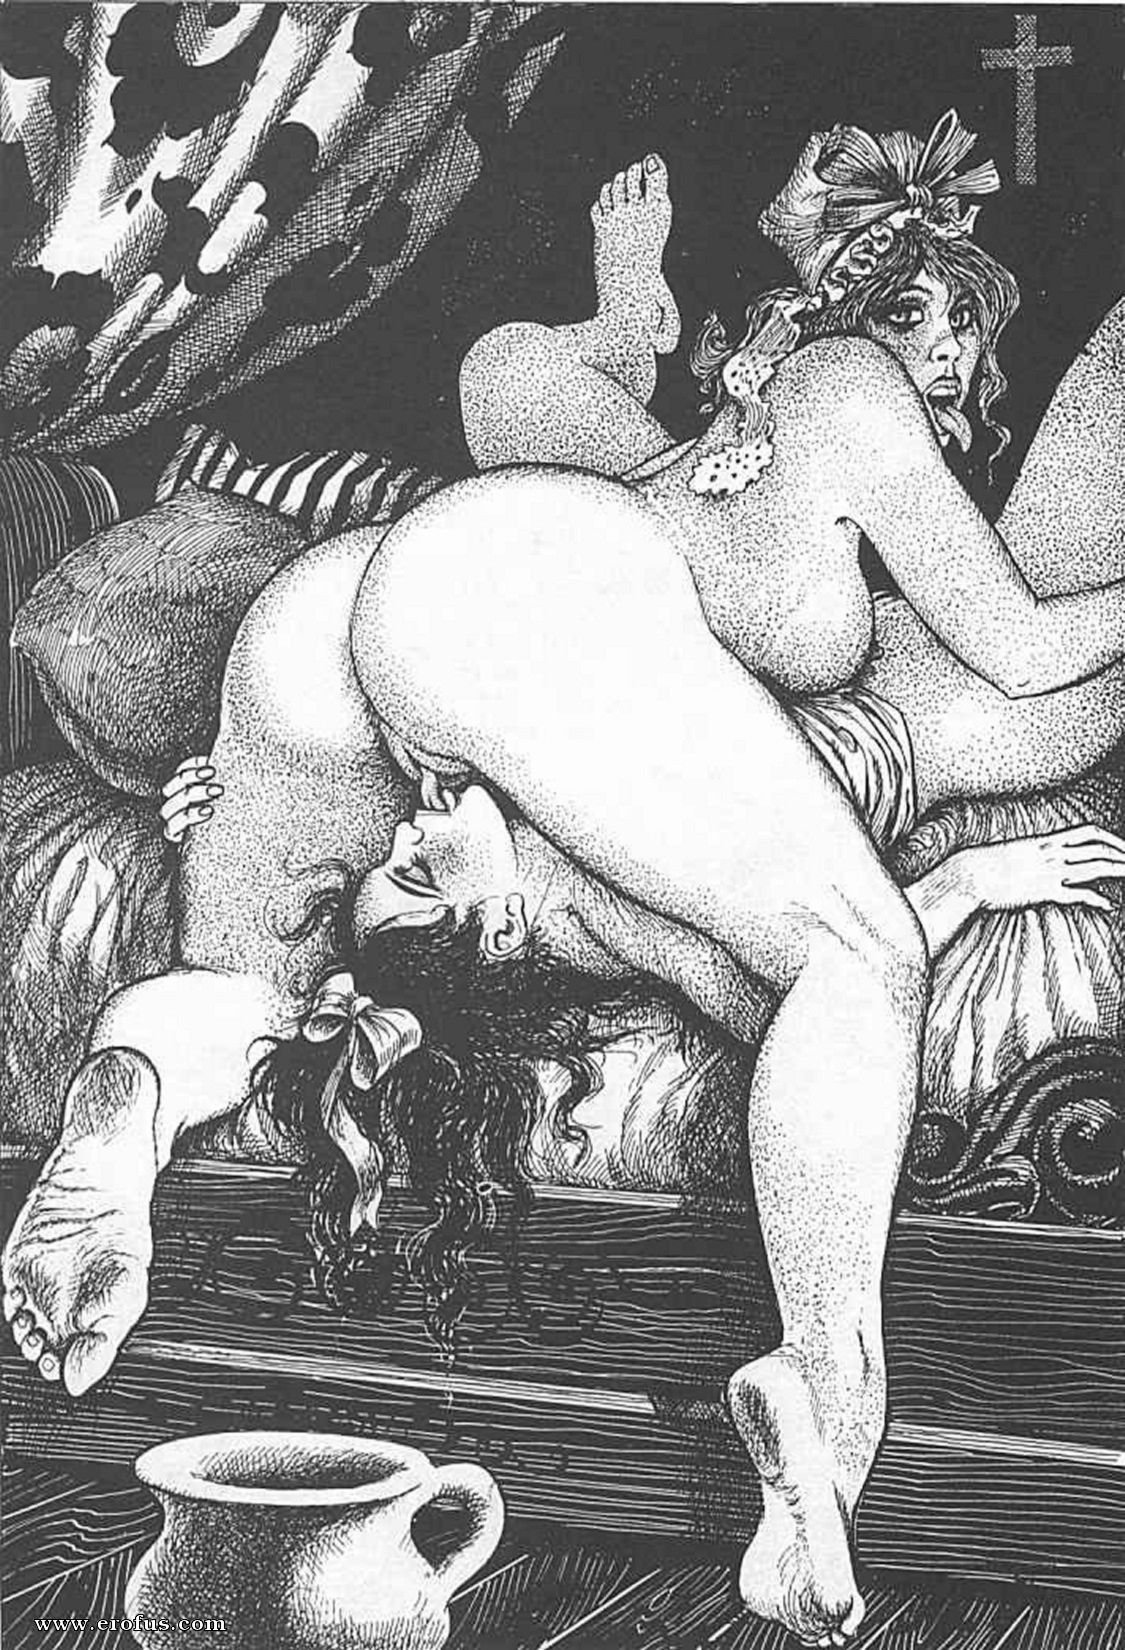 Порно рисунки древнего рима